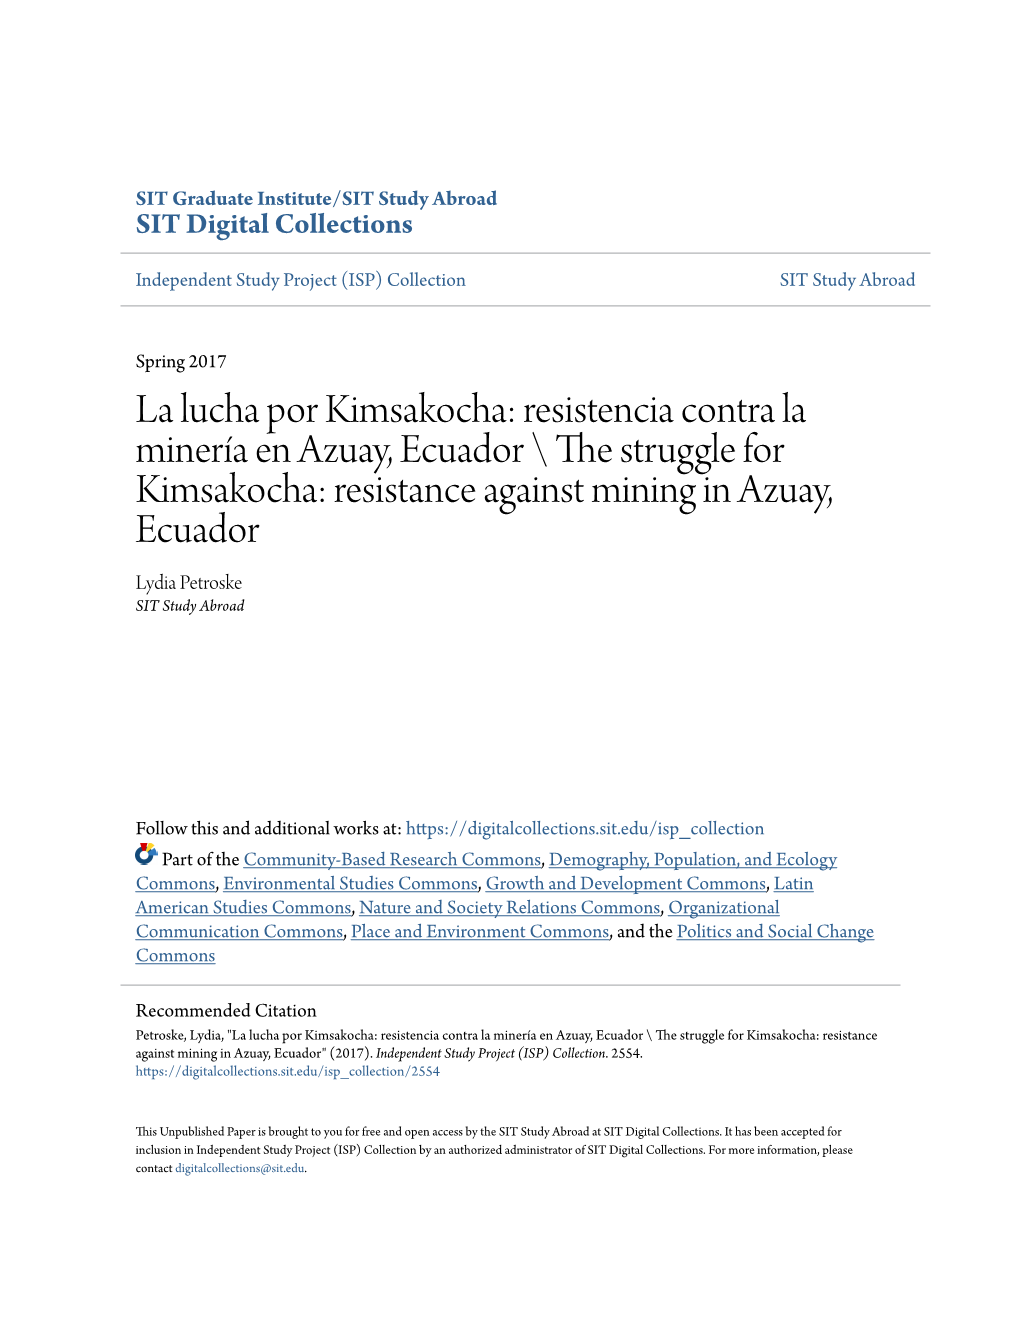 Resistencia Contra La Minería En Azuay, Ecuador \ the Trs Uggle for Kimsakocha: Resistance Against Mining in Azuay, Ecuador Lydia Petroske SIT Study Abroad